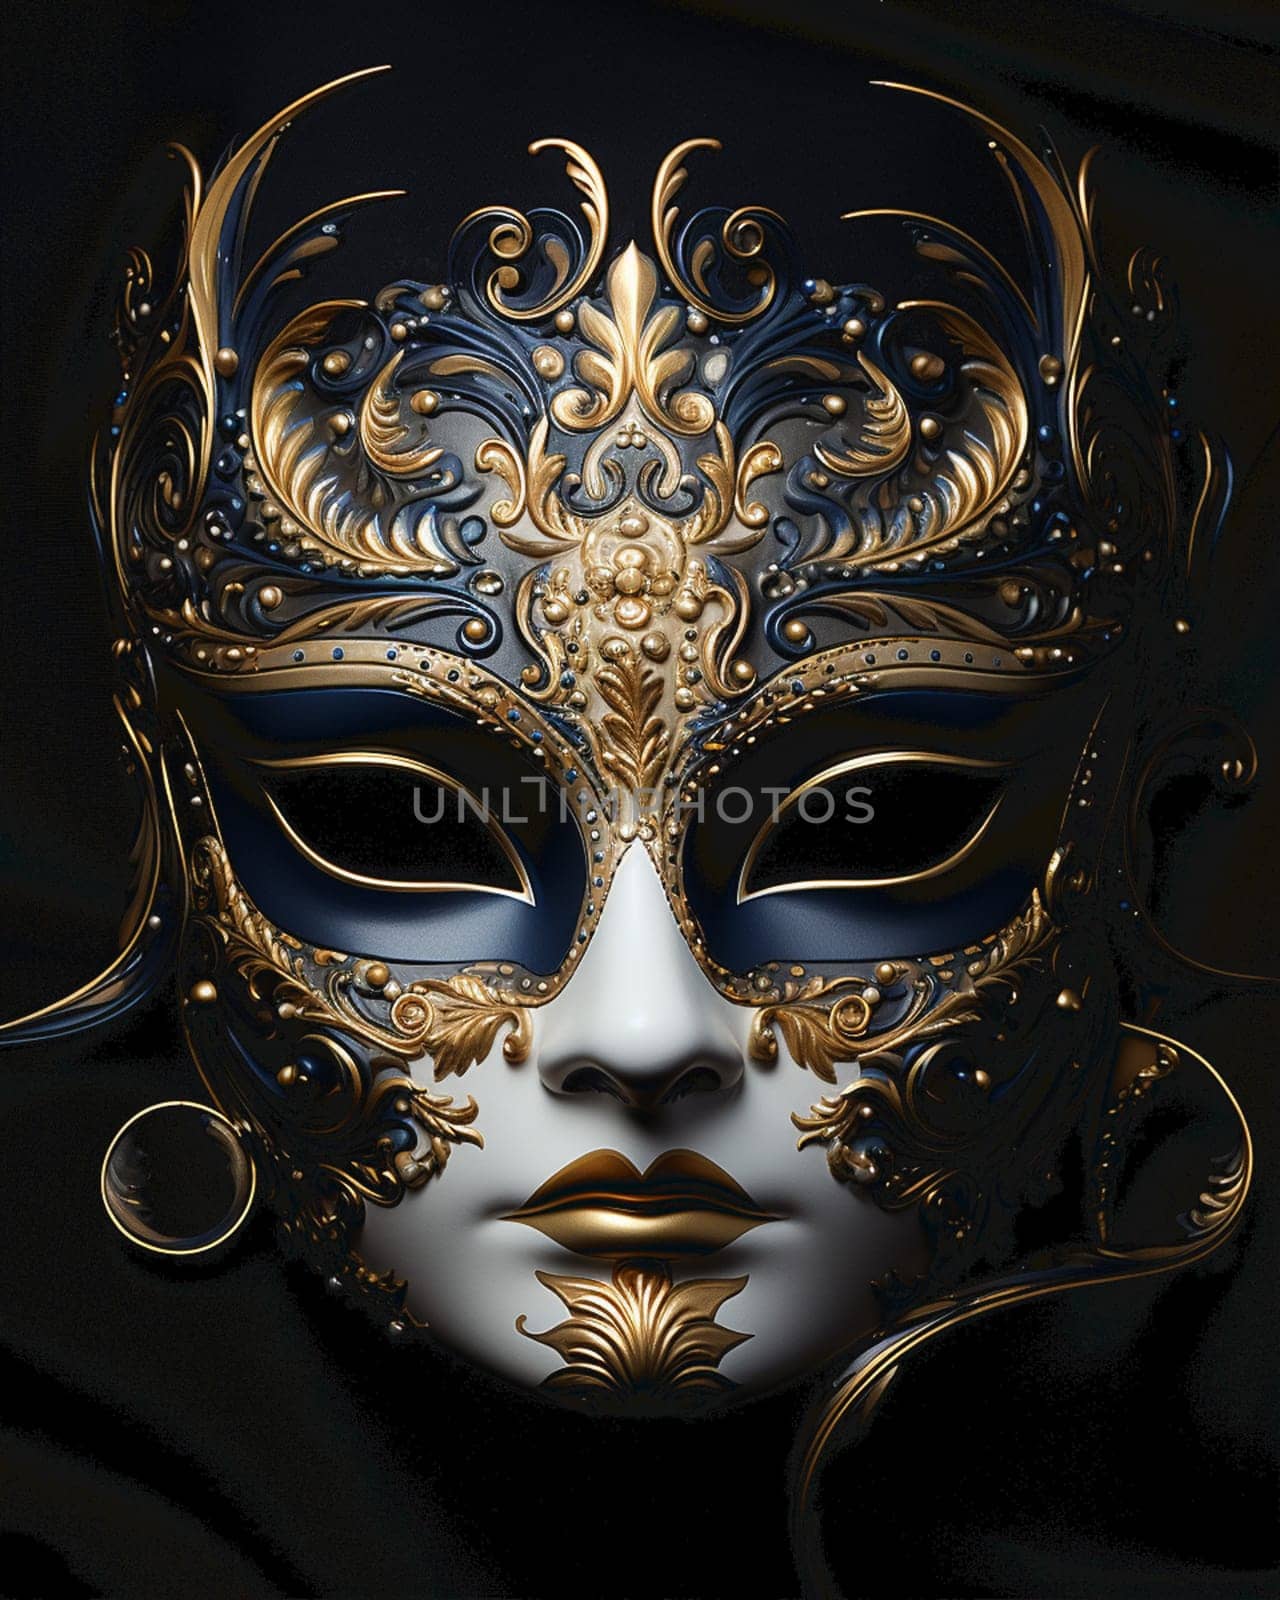 Carnival mask design with golden roses and line plants doodles on black background in 3d illustration